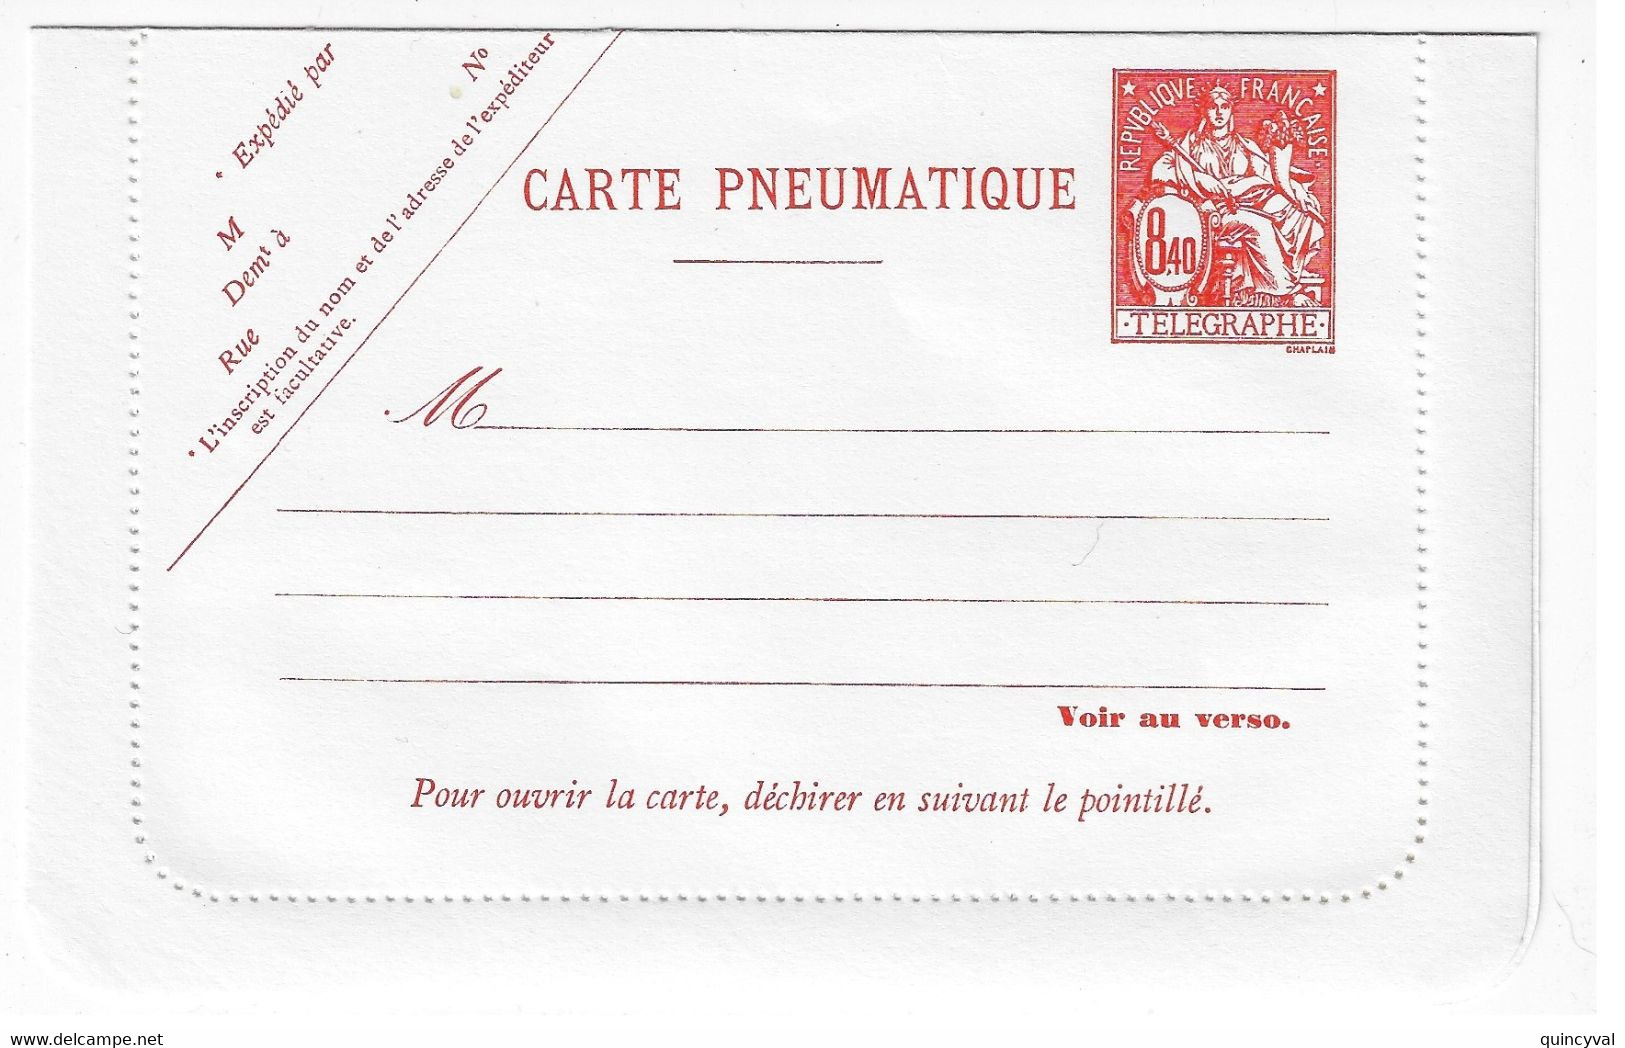 8,40 F Chaplain Carte-lettre Yv 2623 Storch V16 - Pneumatische Post